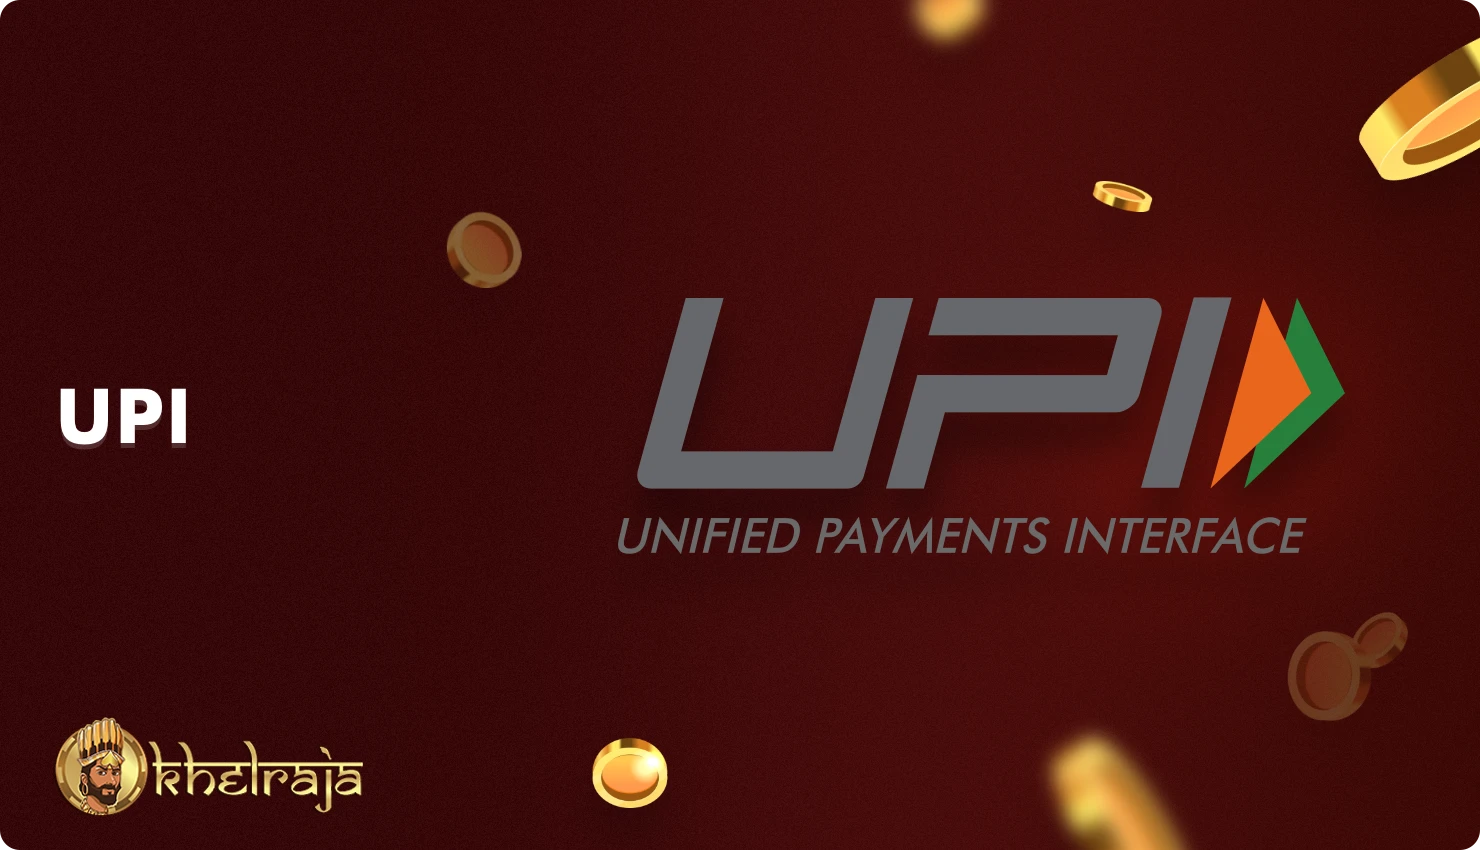 Khelraja उपयोगकर्ता UPI का उपयोग जमा करने और जीत की निकासी के लिए कर सकते हैं